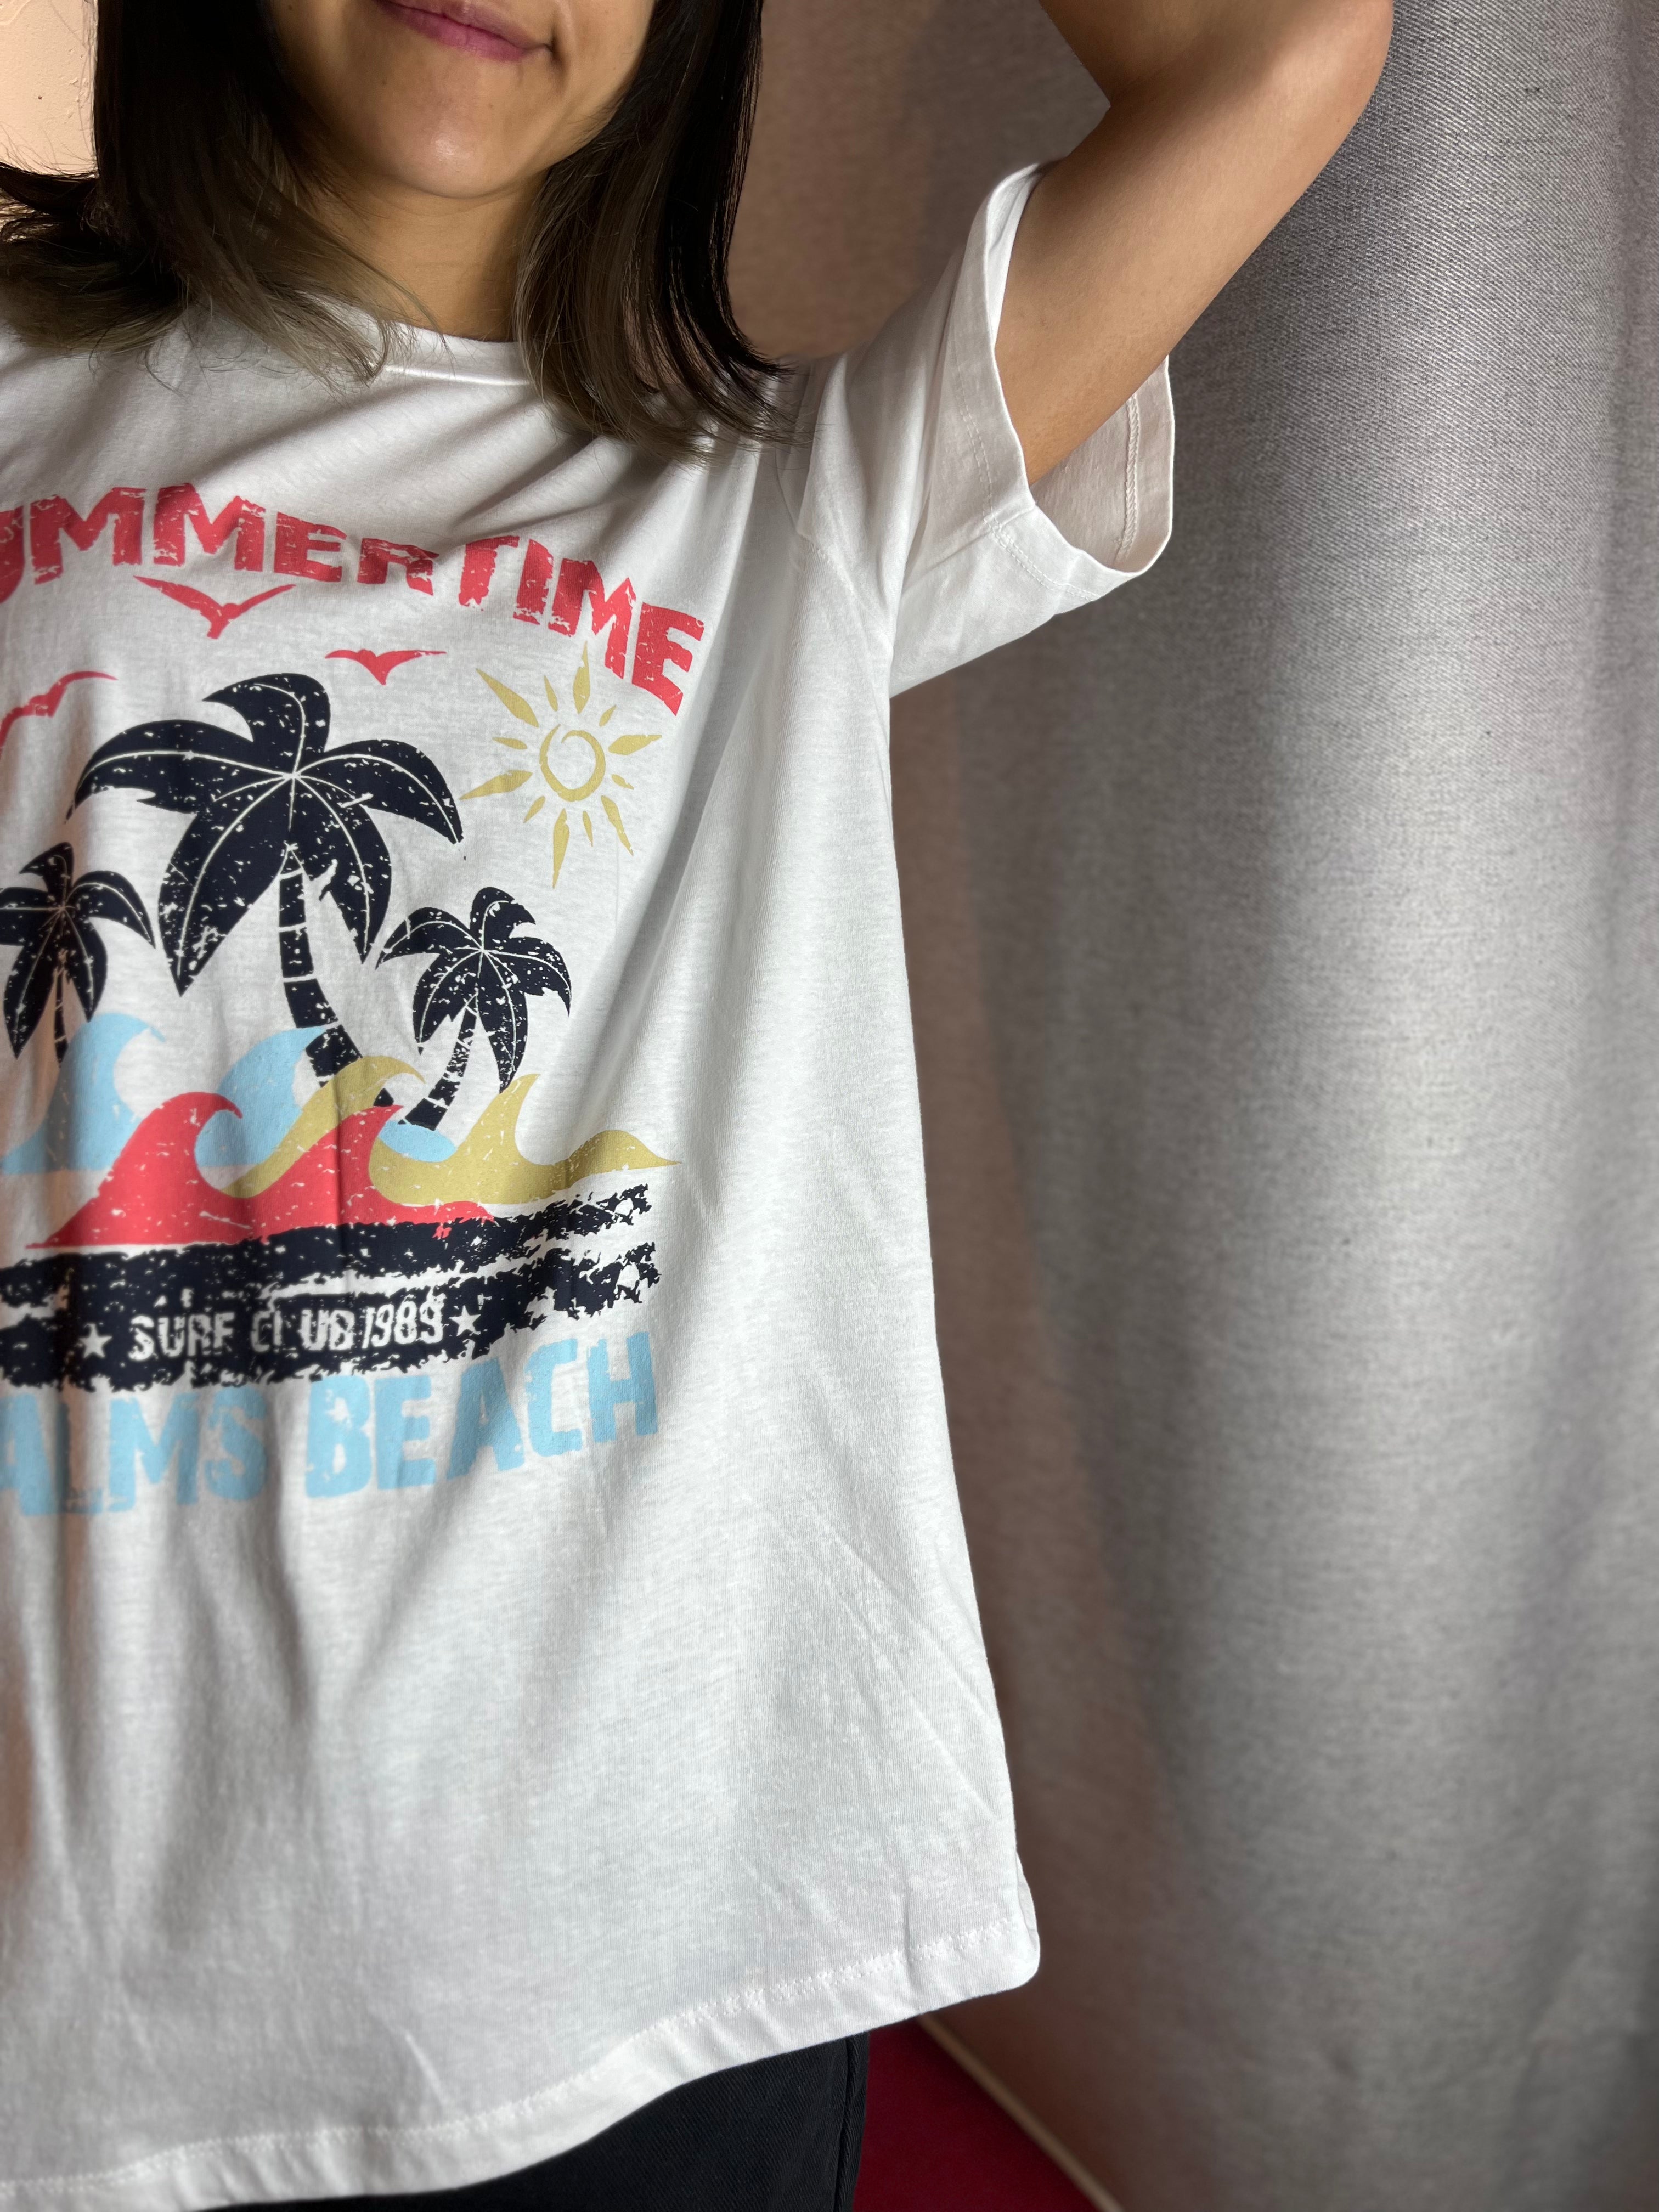 SUMMER TIME T-shirt